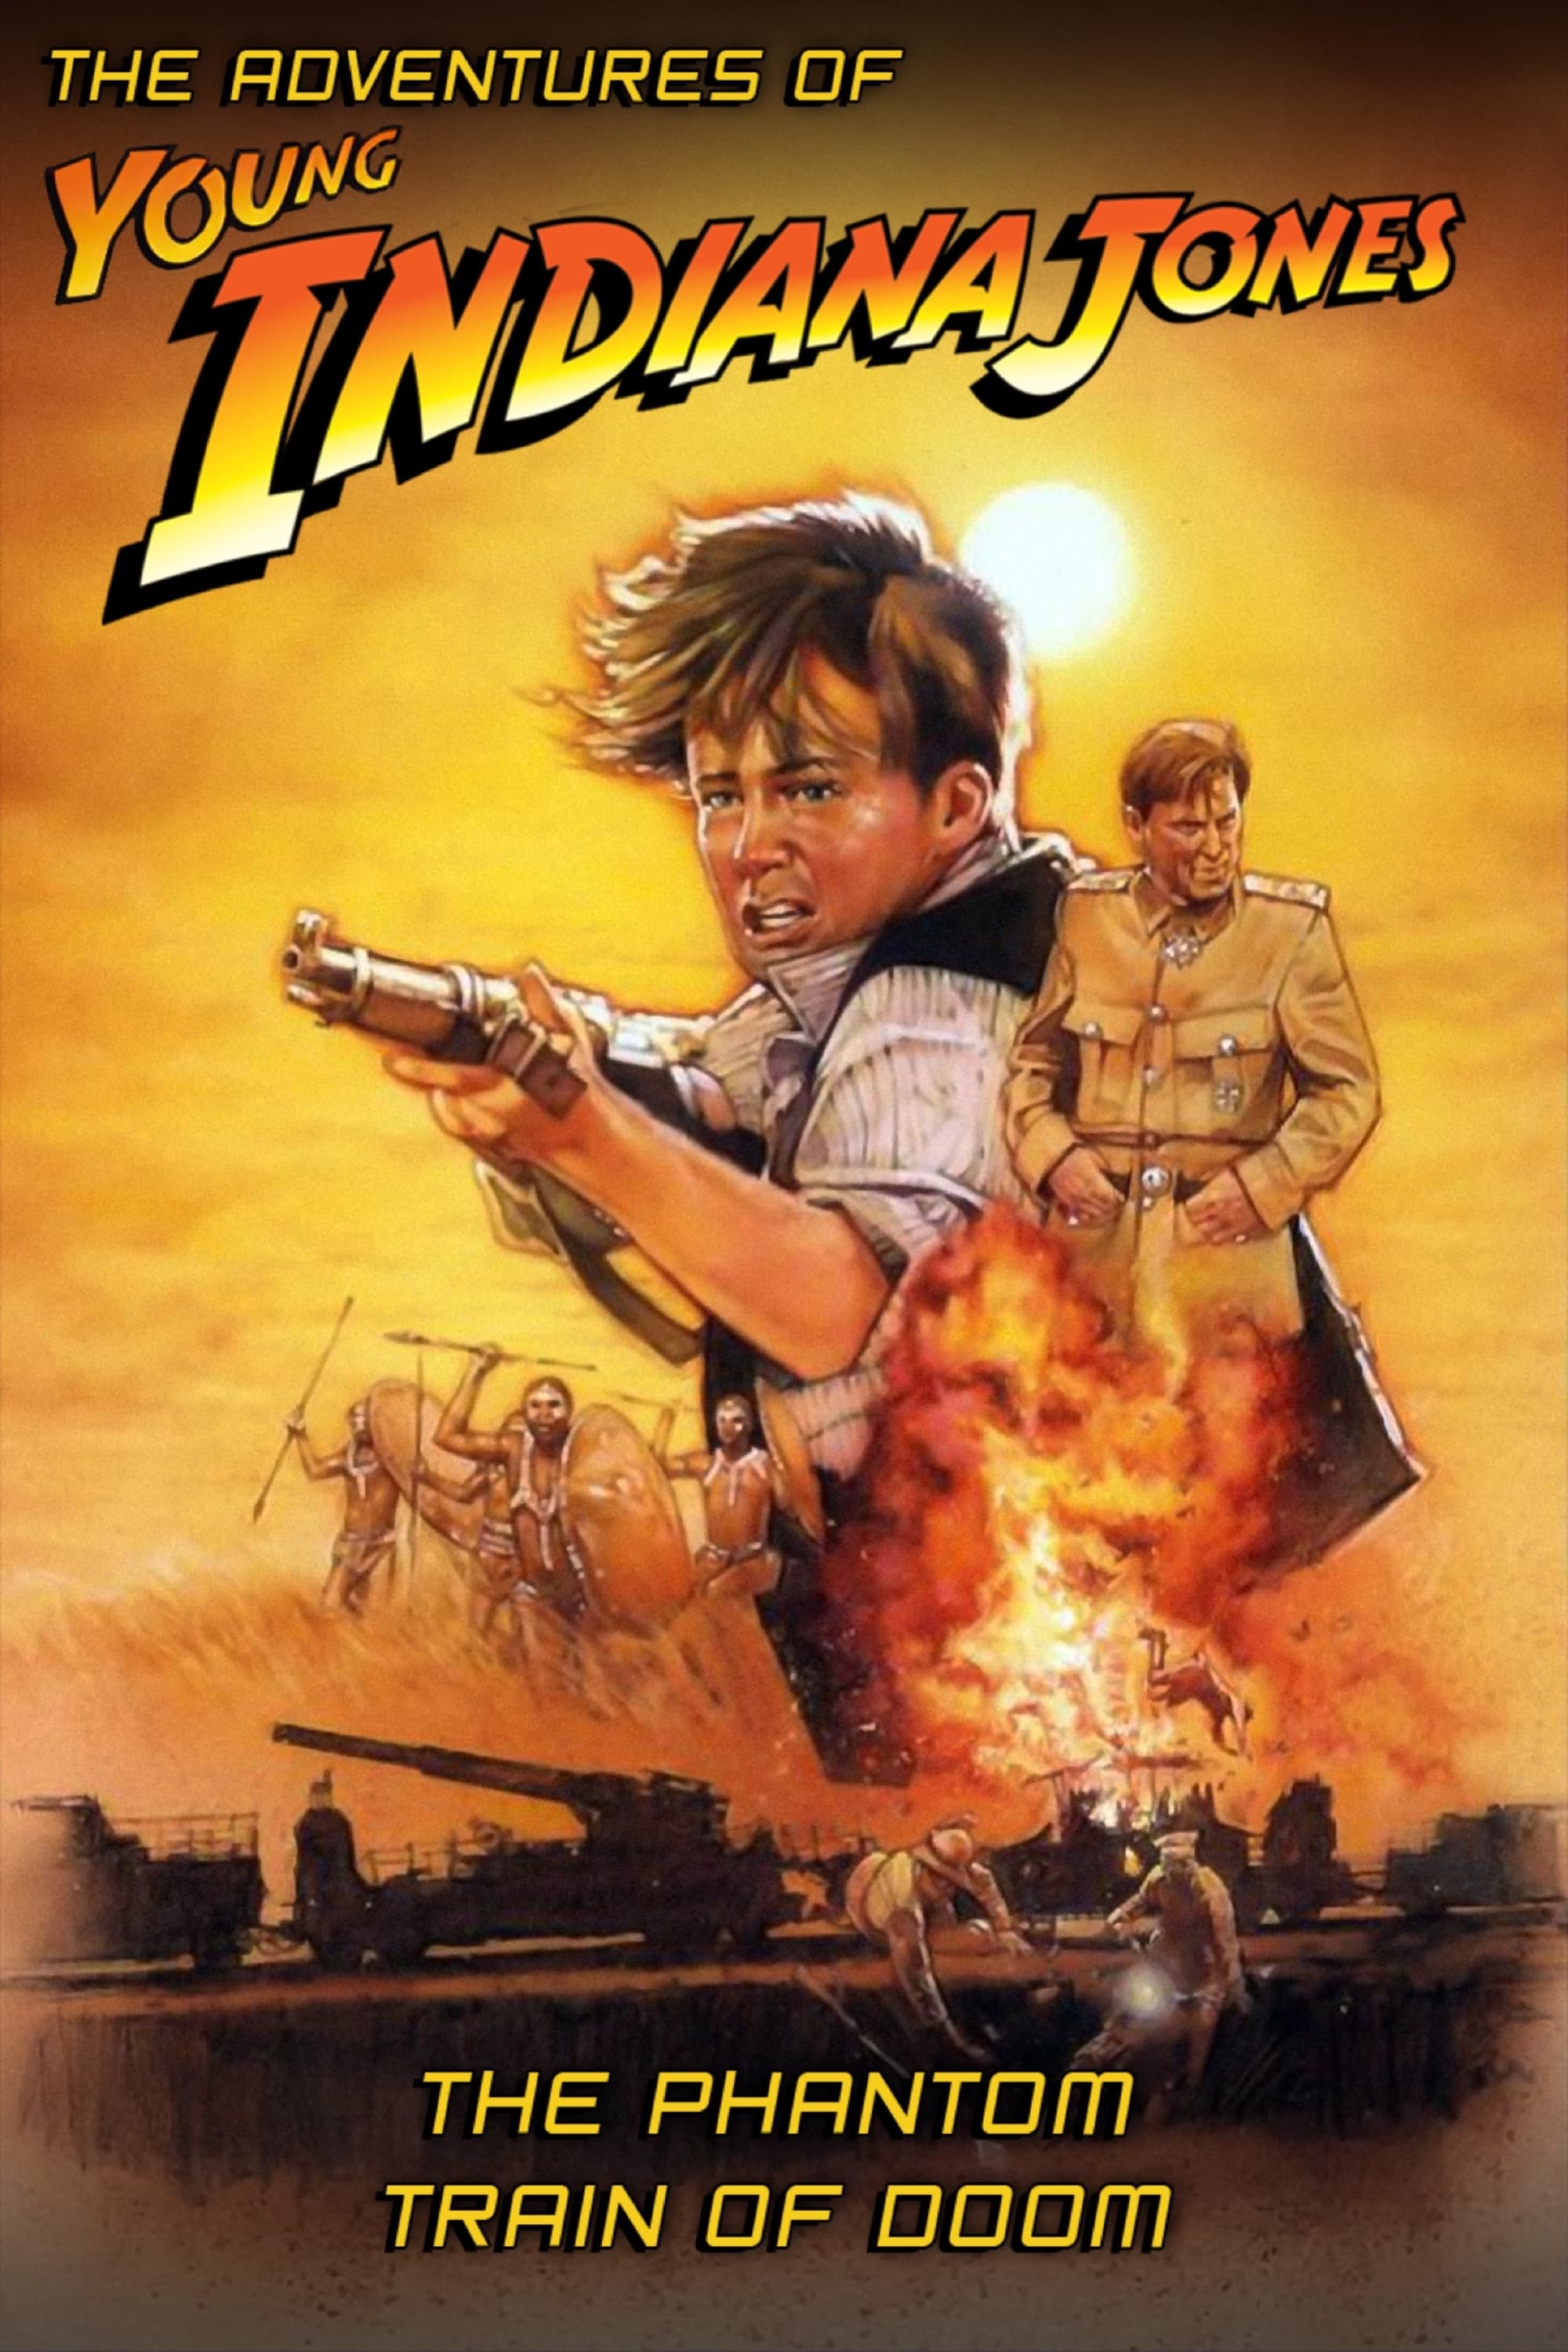 Die Abenteuer des Young Indiana Jones - Die Jagd nach dem Geisterzug